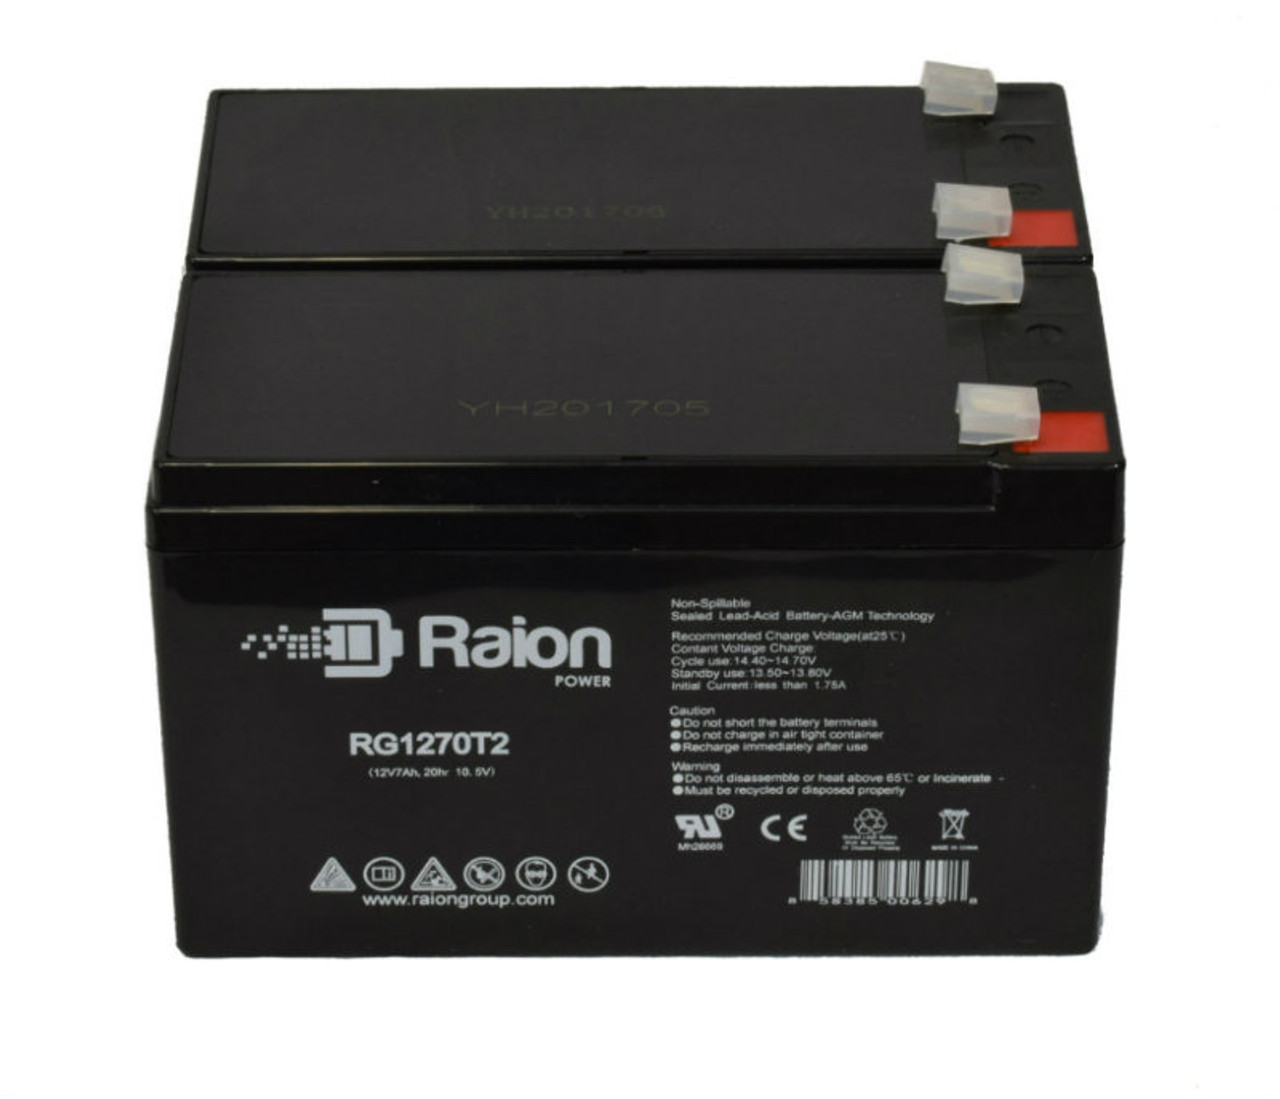 Raion Power Replacement 12V 7Ah Battery for Peak Energy PK12V7.2F2 - 2 Pack